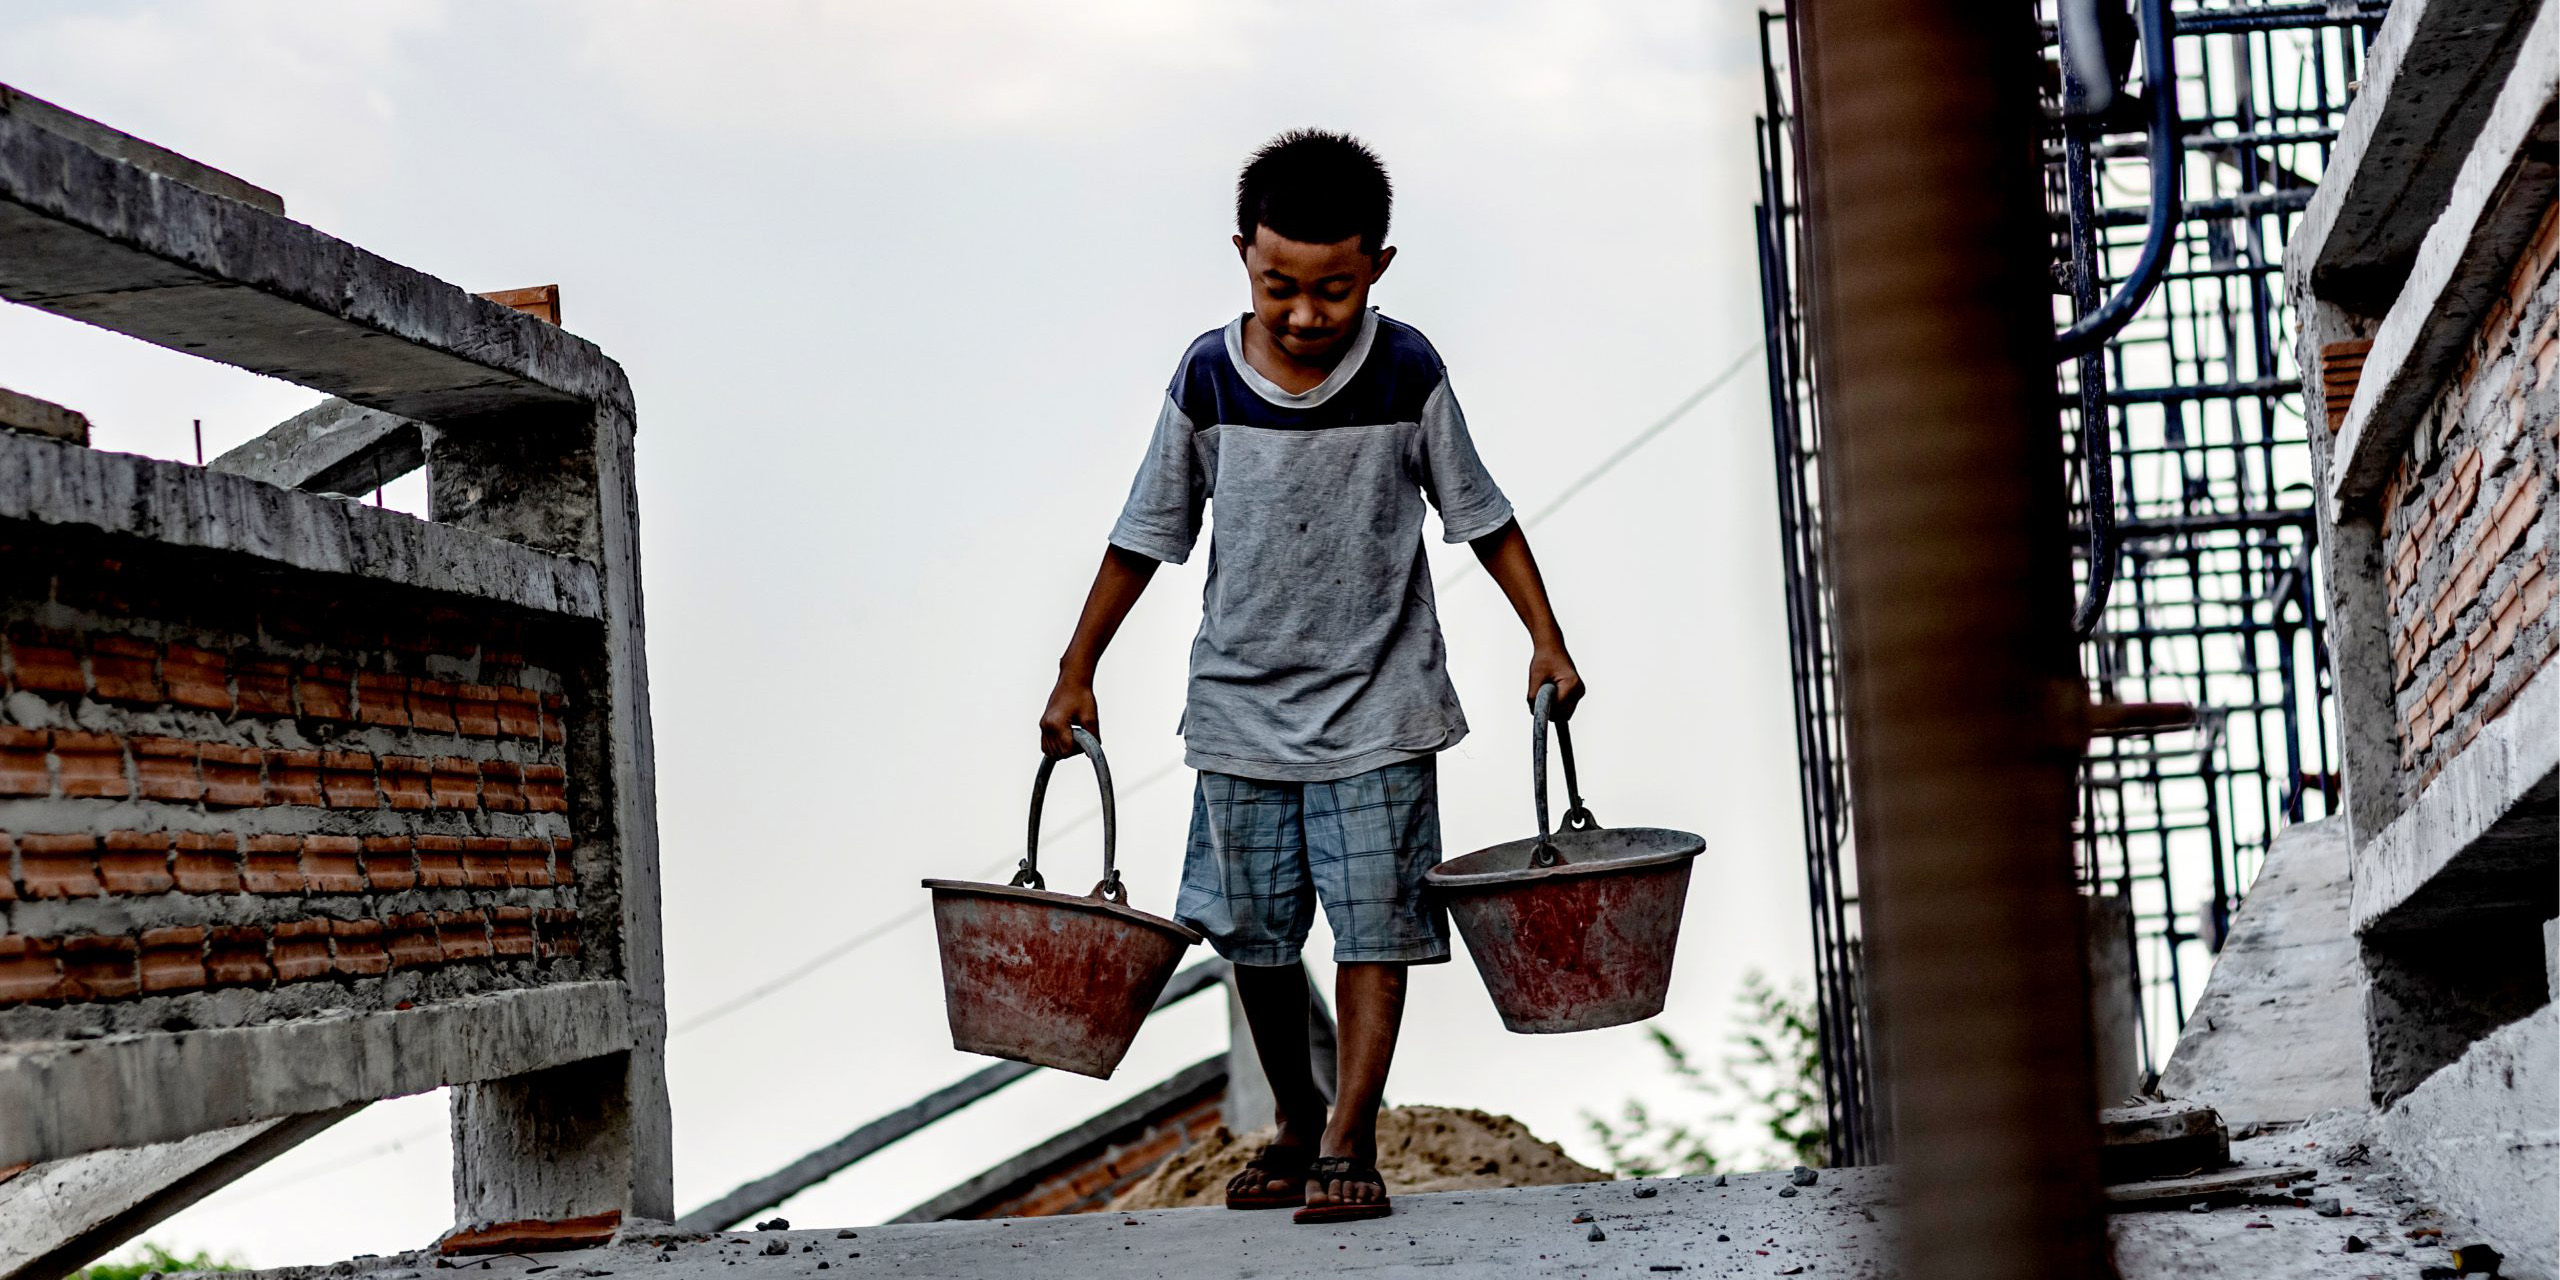 México y EU acuerdan luchar contra el trabajo forzoso e infantil | El Imparcial de Oaxaca